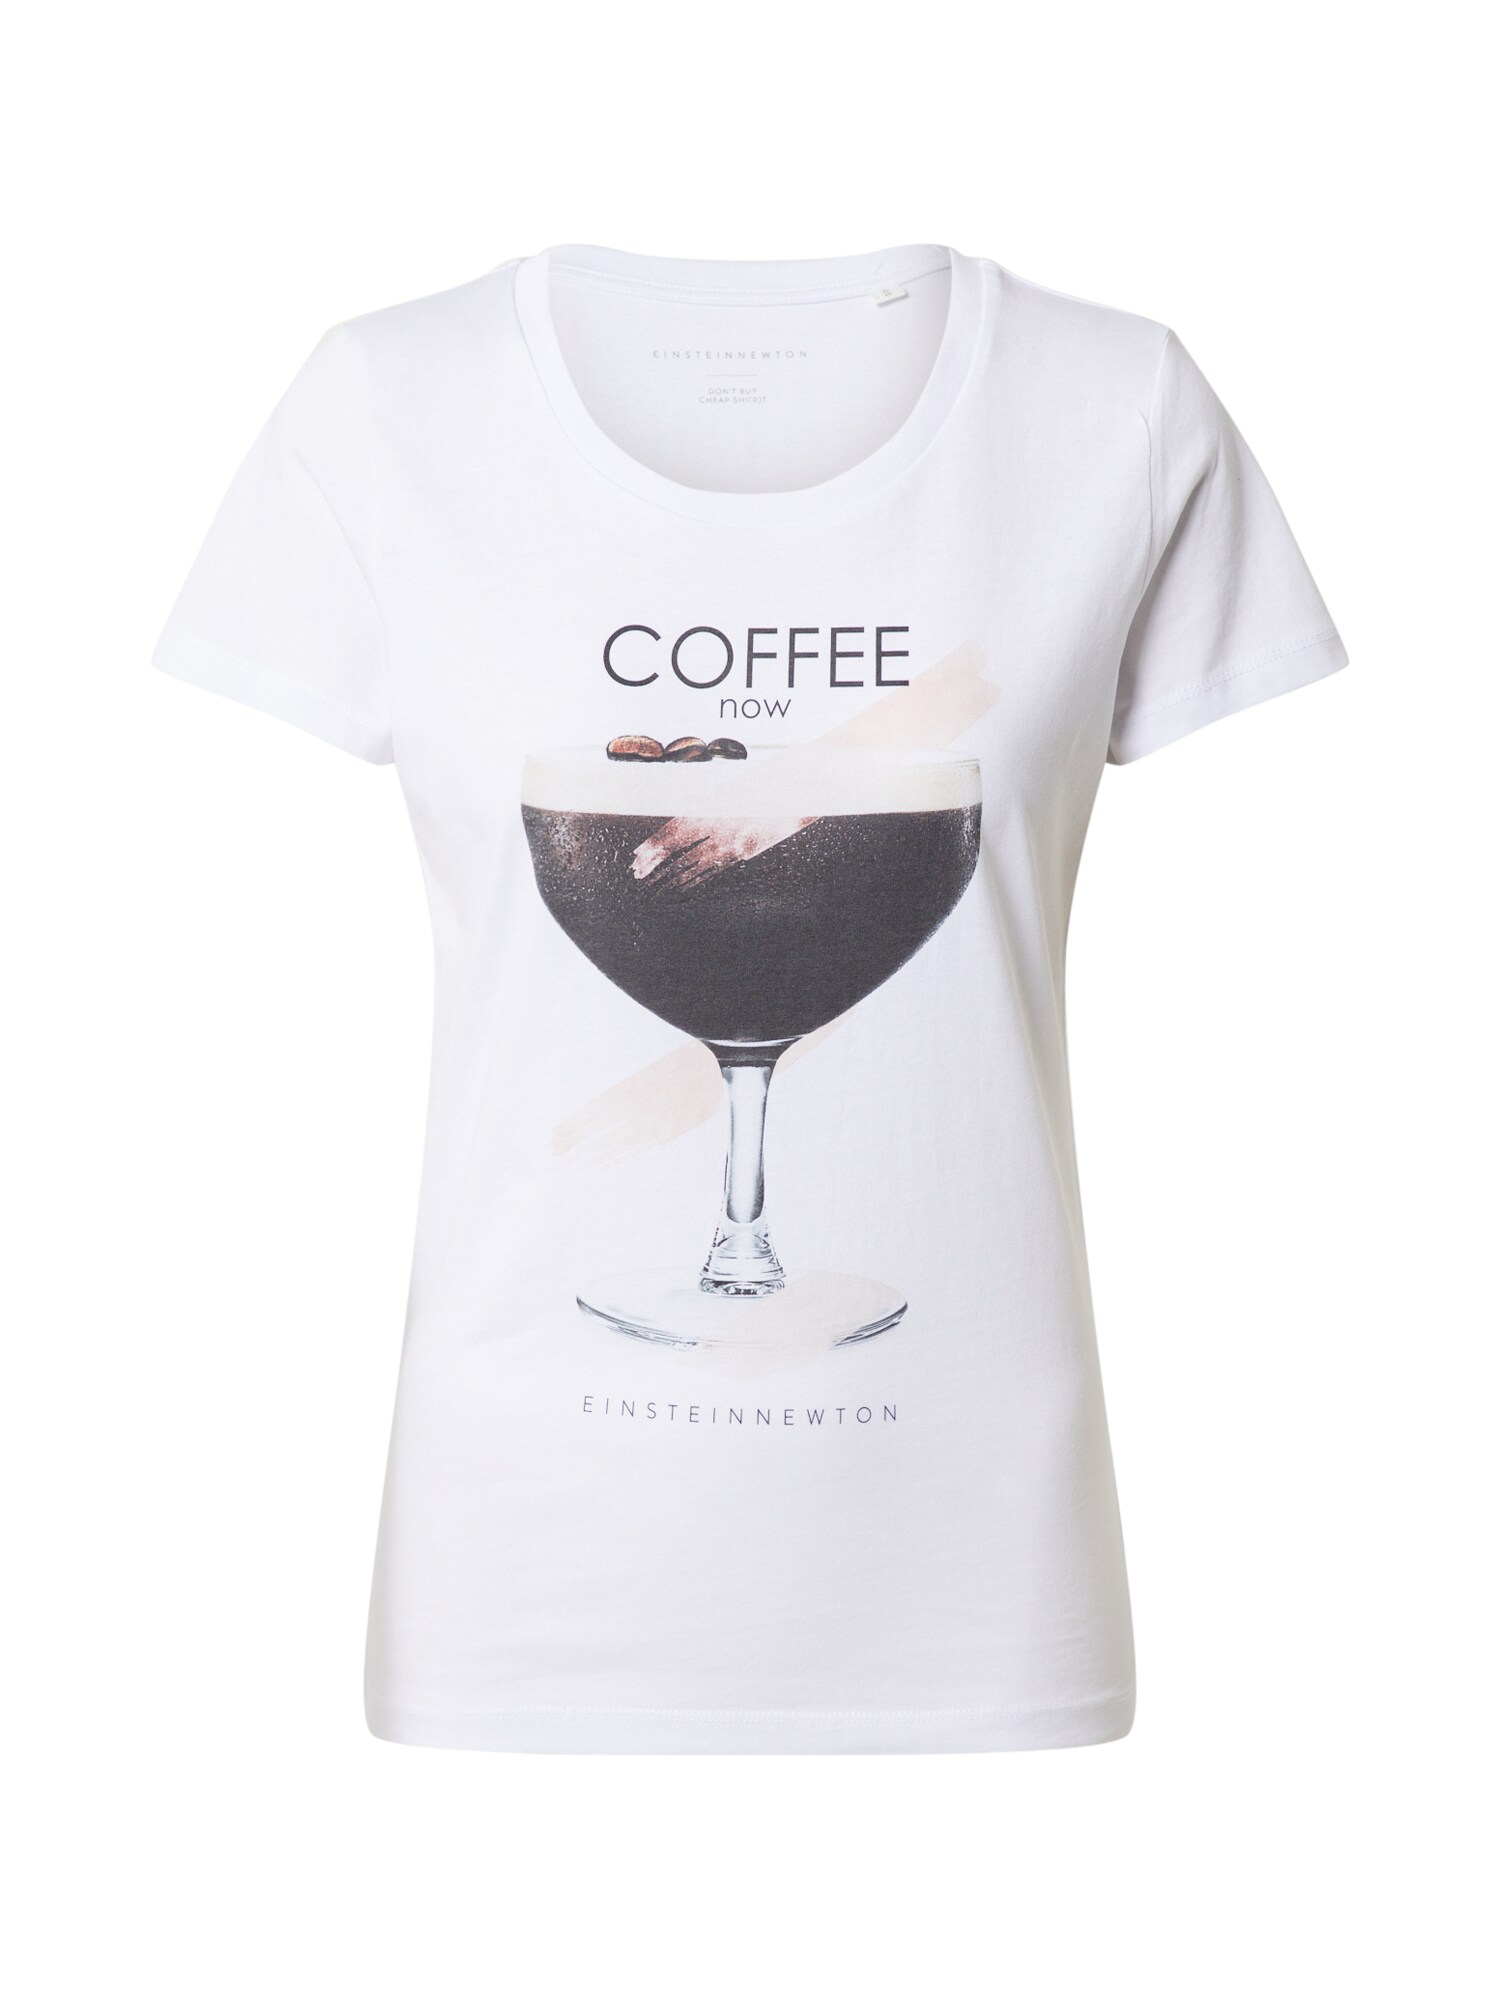 EINSTEIN & NEWTON Marškinėliai 'Coffee Now'  juoda / rožių spalva / balta